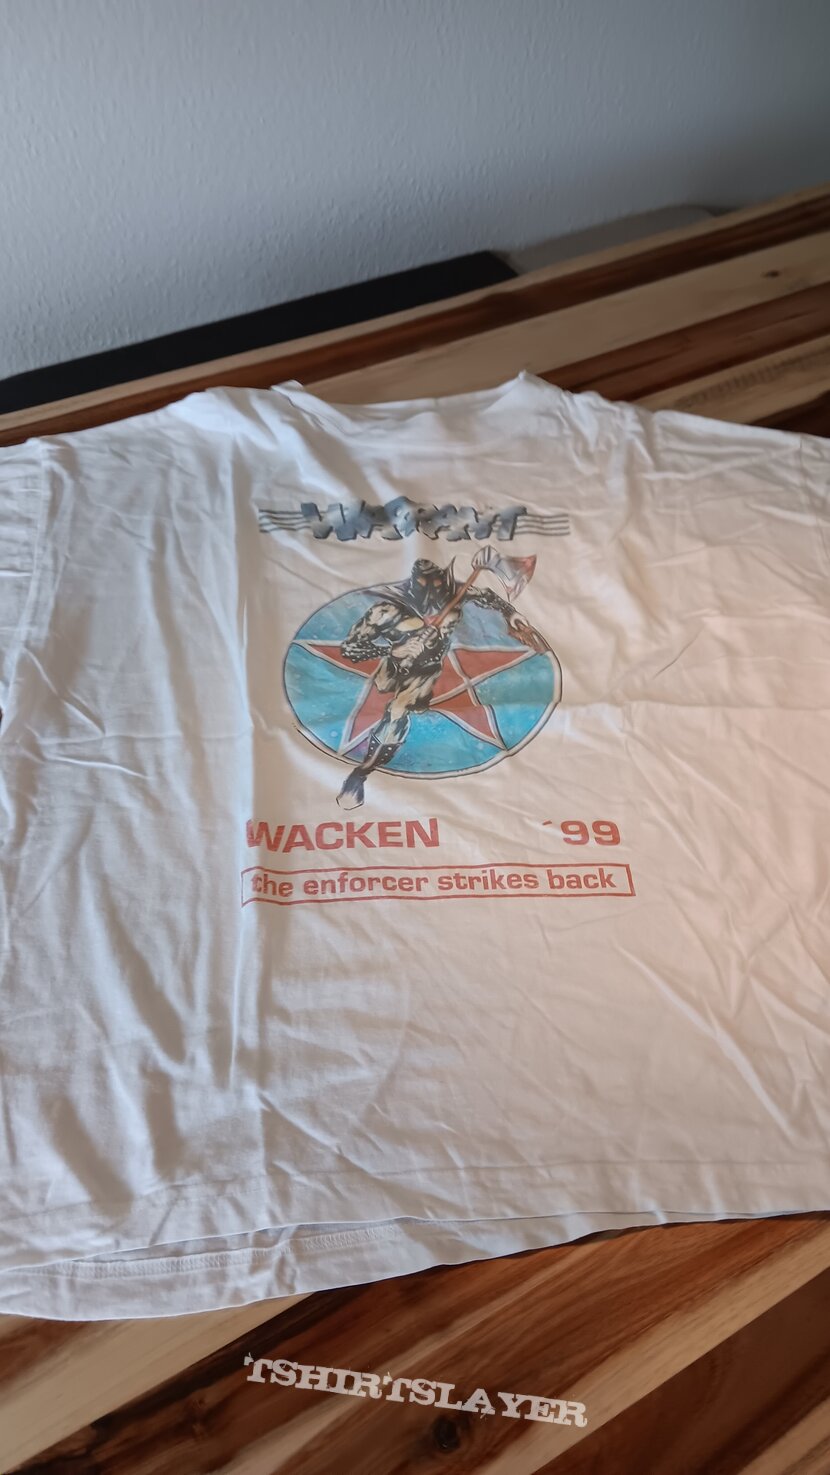 Warrant (Germany) The Enforcer strikes back Wacken &#039;99